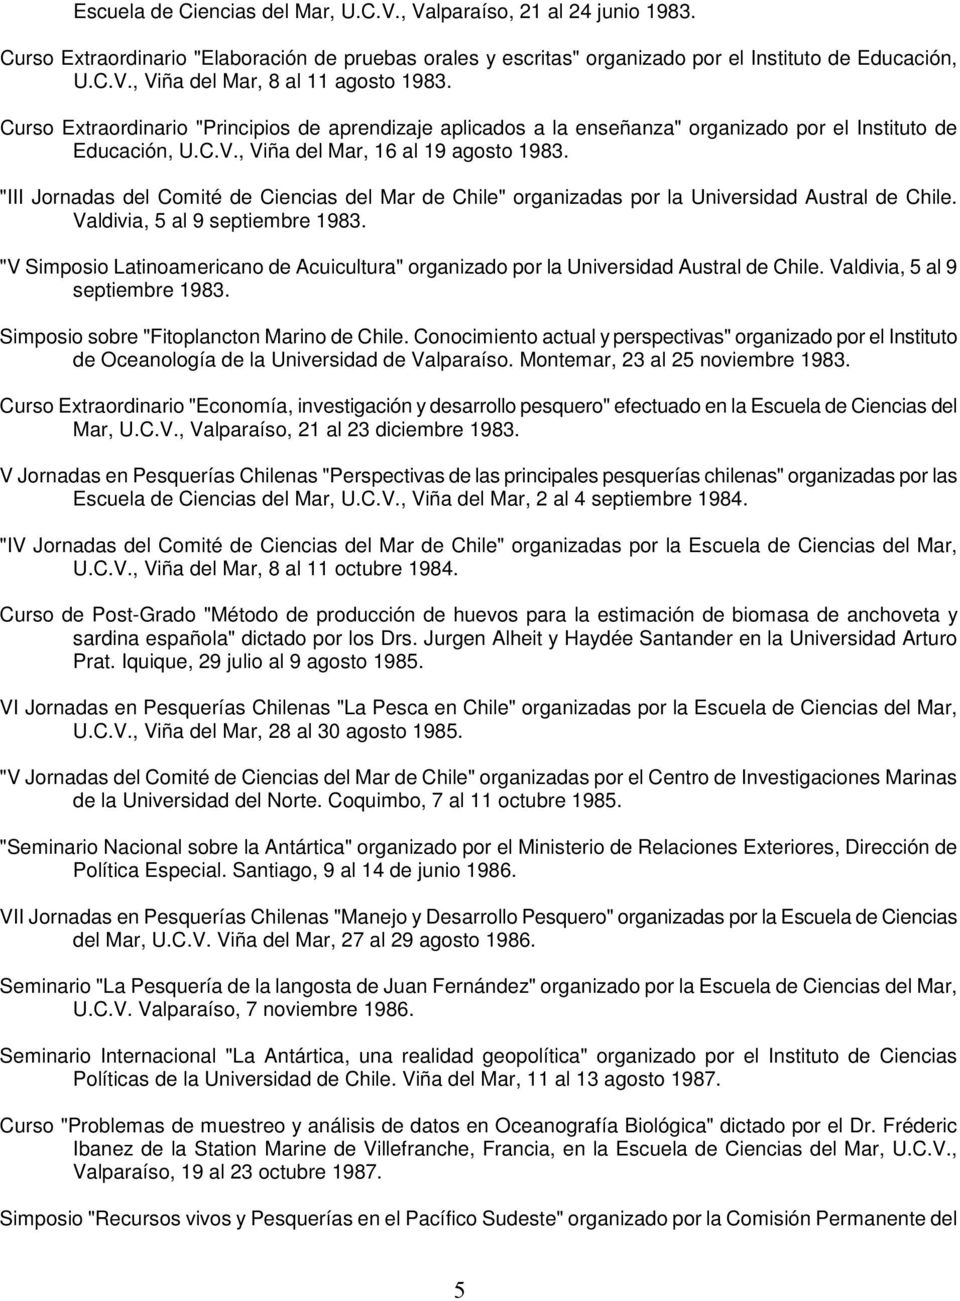 "III Jornadas del Comité de Ciencias del Mar de Chile" organizadas por la Universidad Austral de Chile. Valdivia, 5 al 9 septiembre 1983.